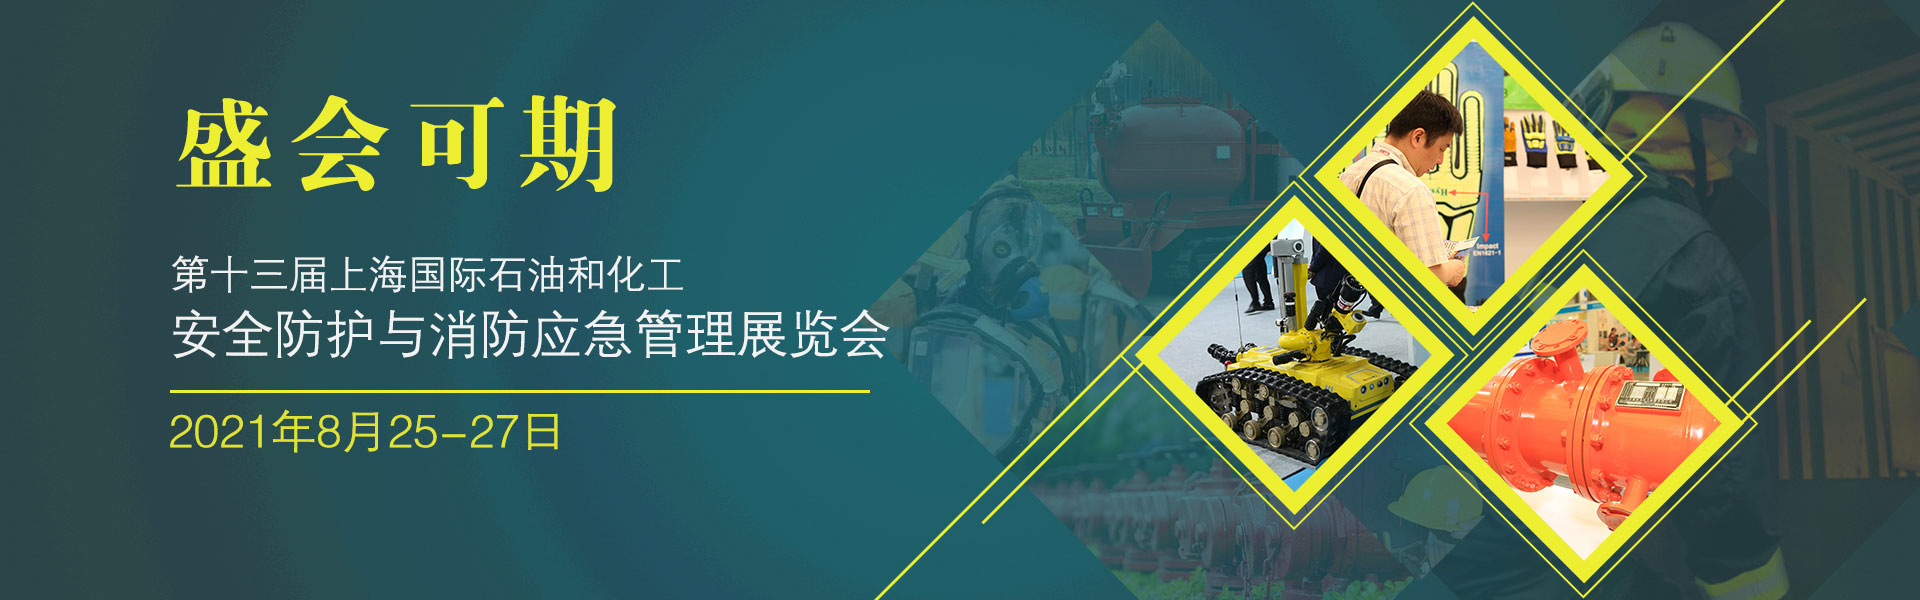 上海国际石油和化工安全防护与消防应急管理展览会